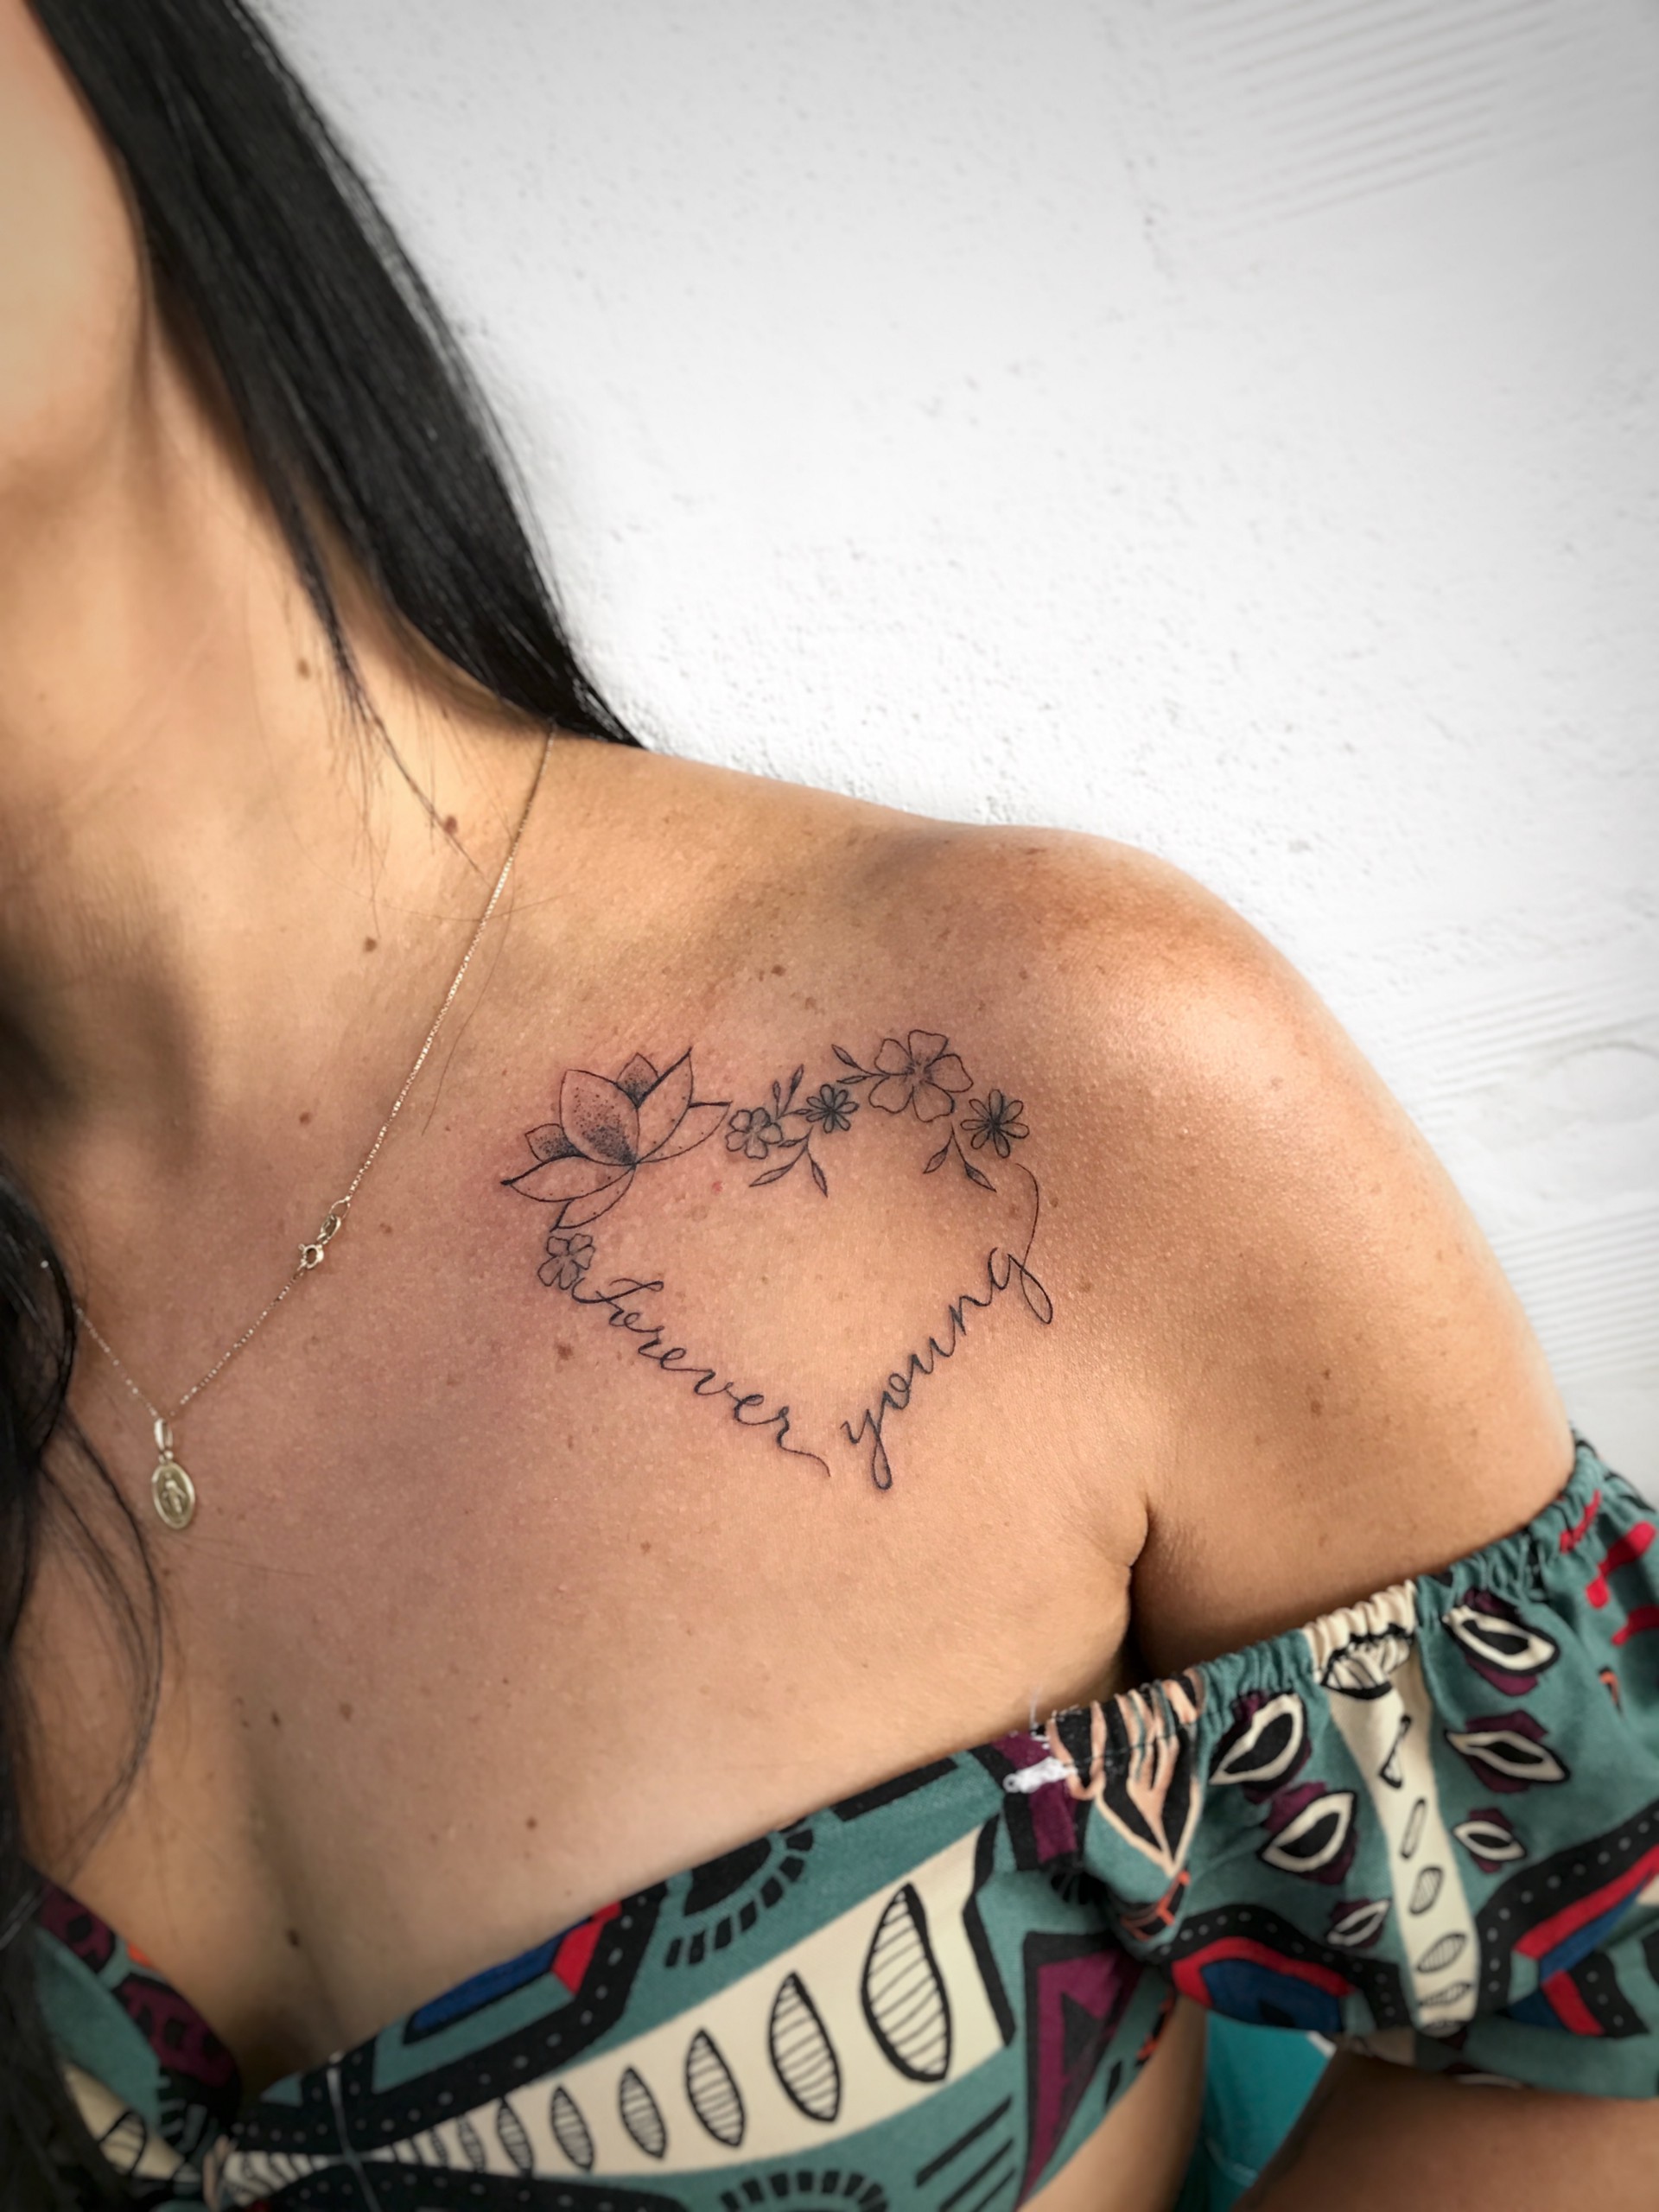 Tatuagem mandala na mão com rosas e arabescos. Tattoo super